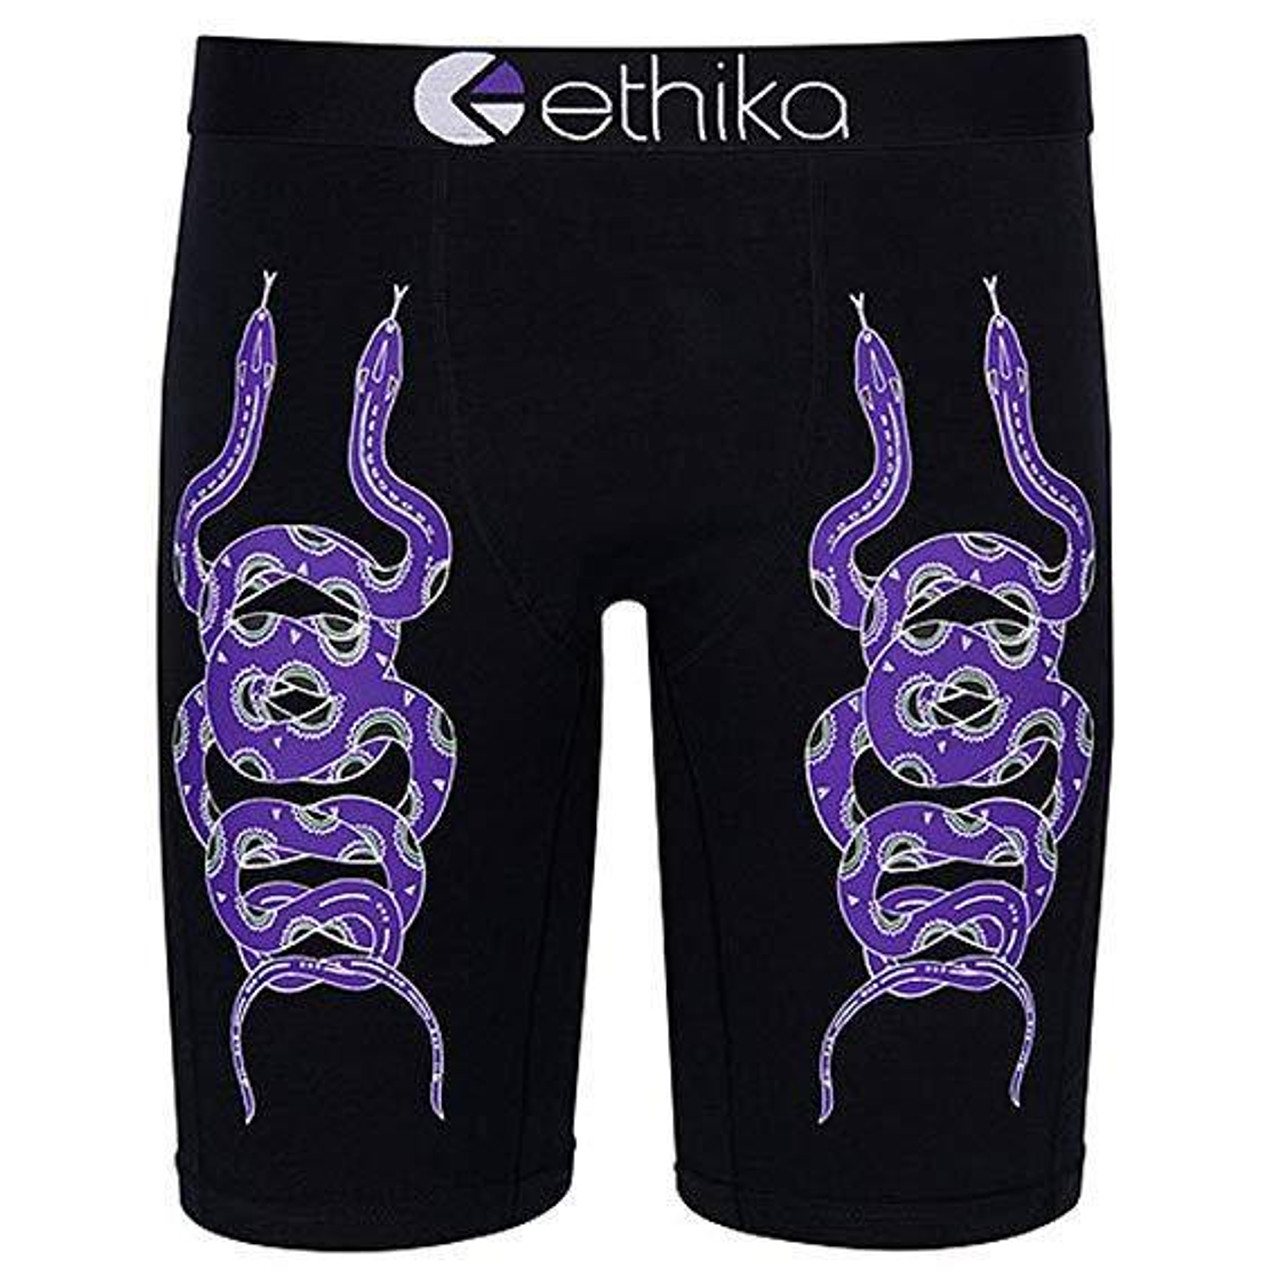 Ethika Men's Underwear Boxer Brief The Staple Fit